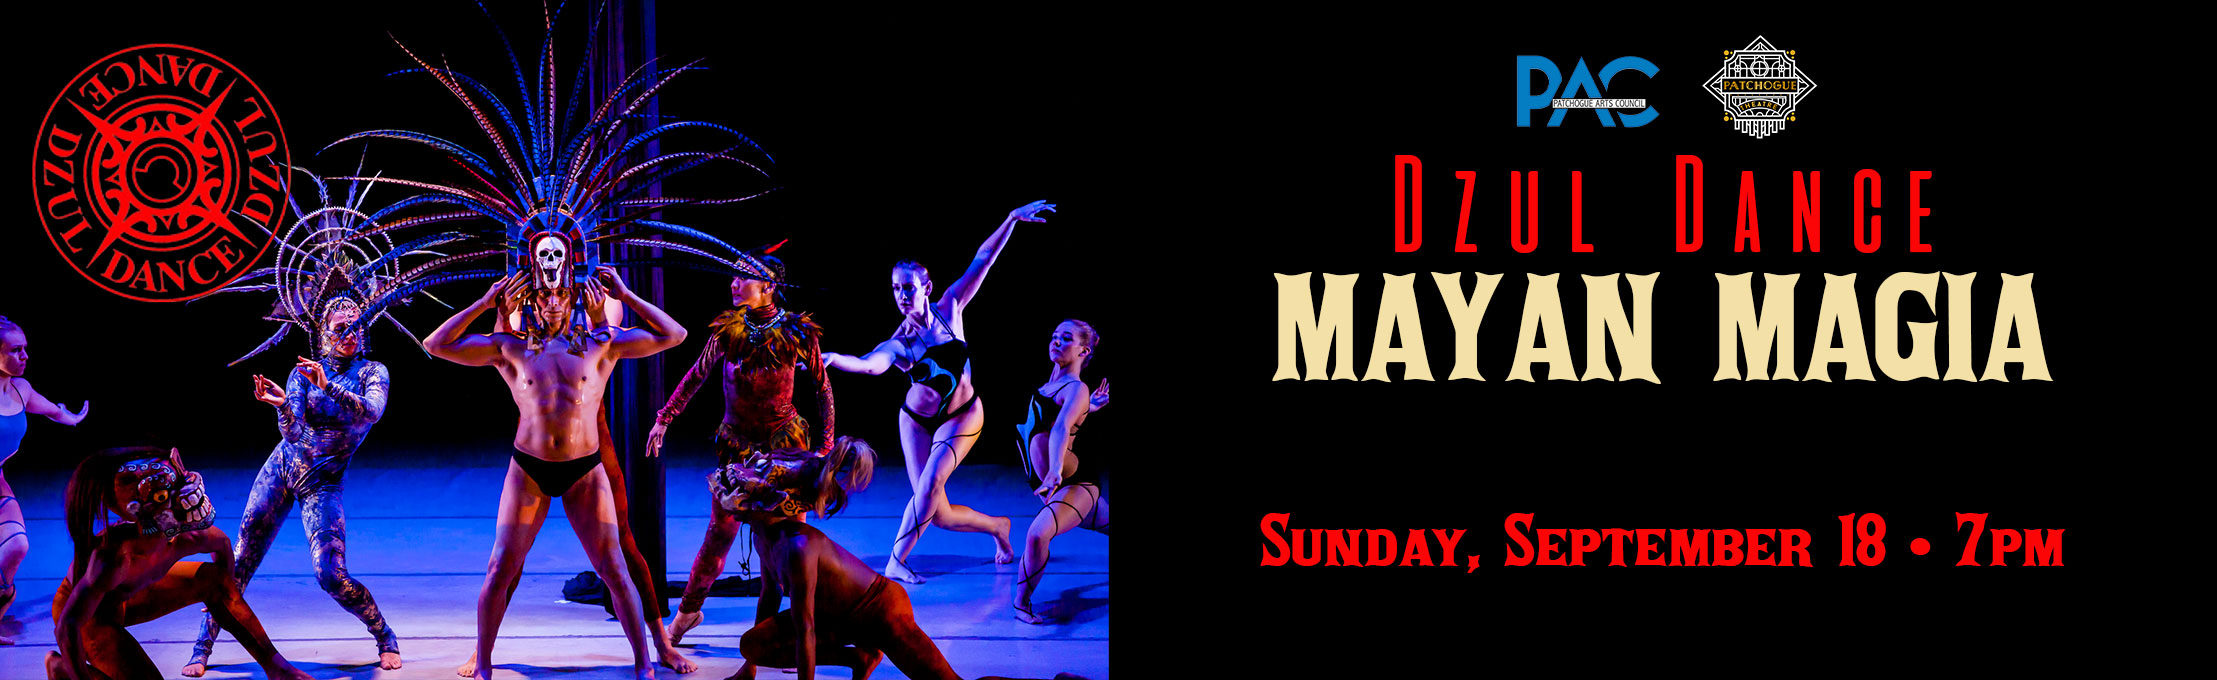 DZUL Dance: Mayan Magia